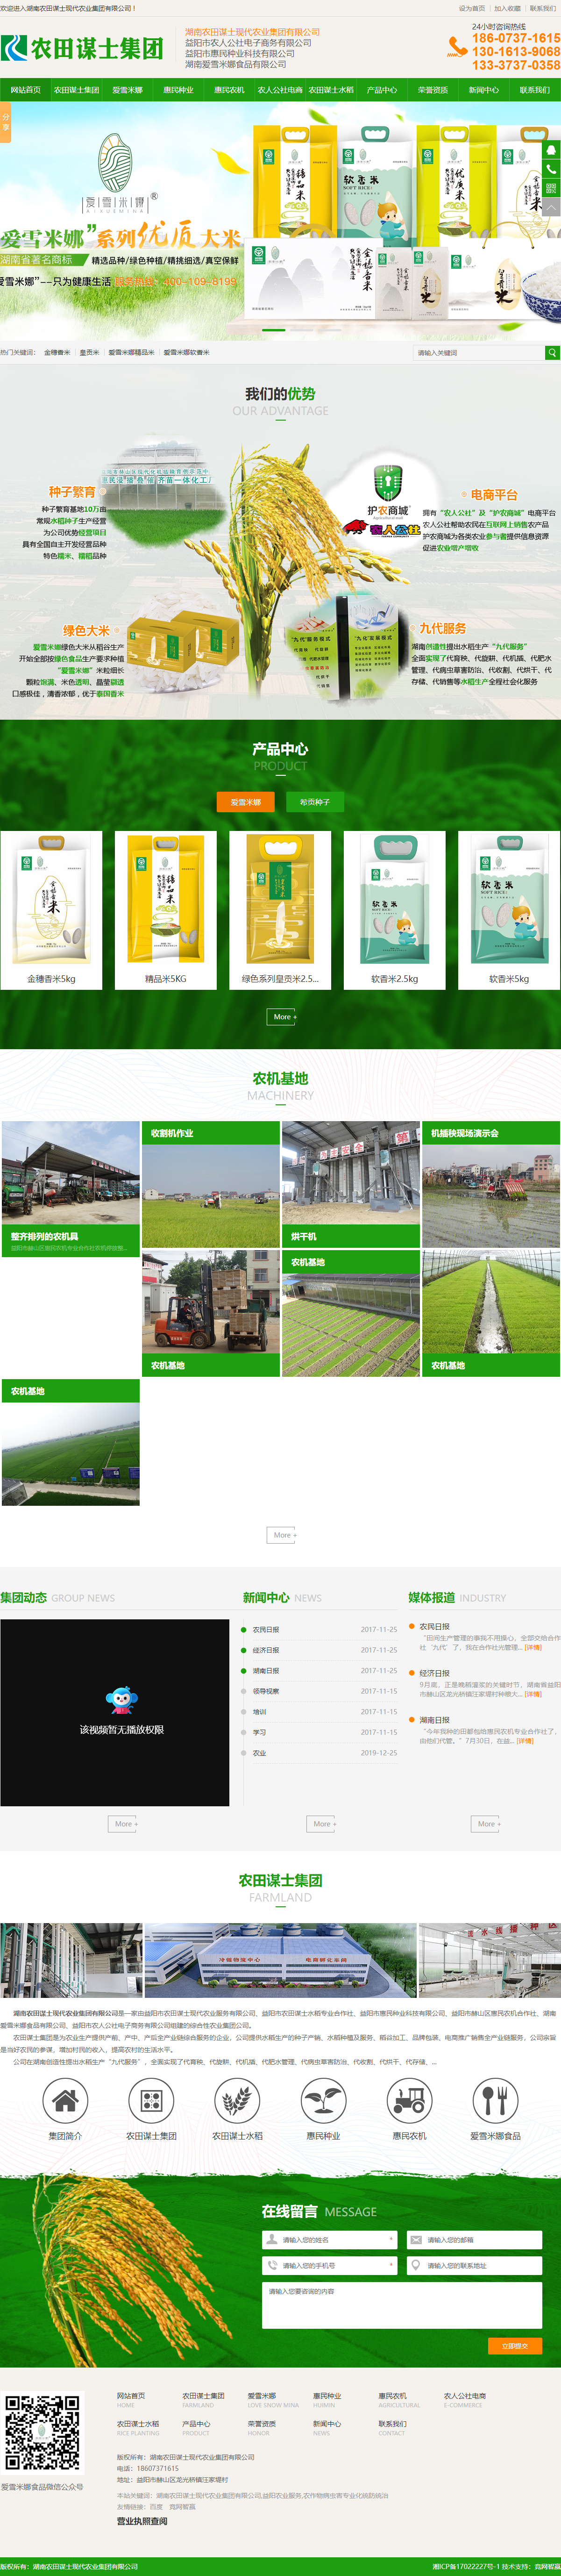 湖南农田谋士现代农业集团有限公司网站案例